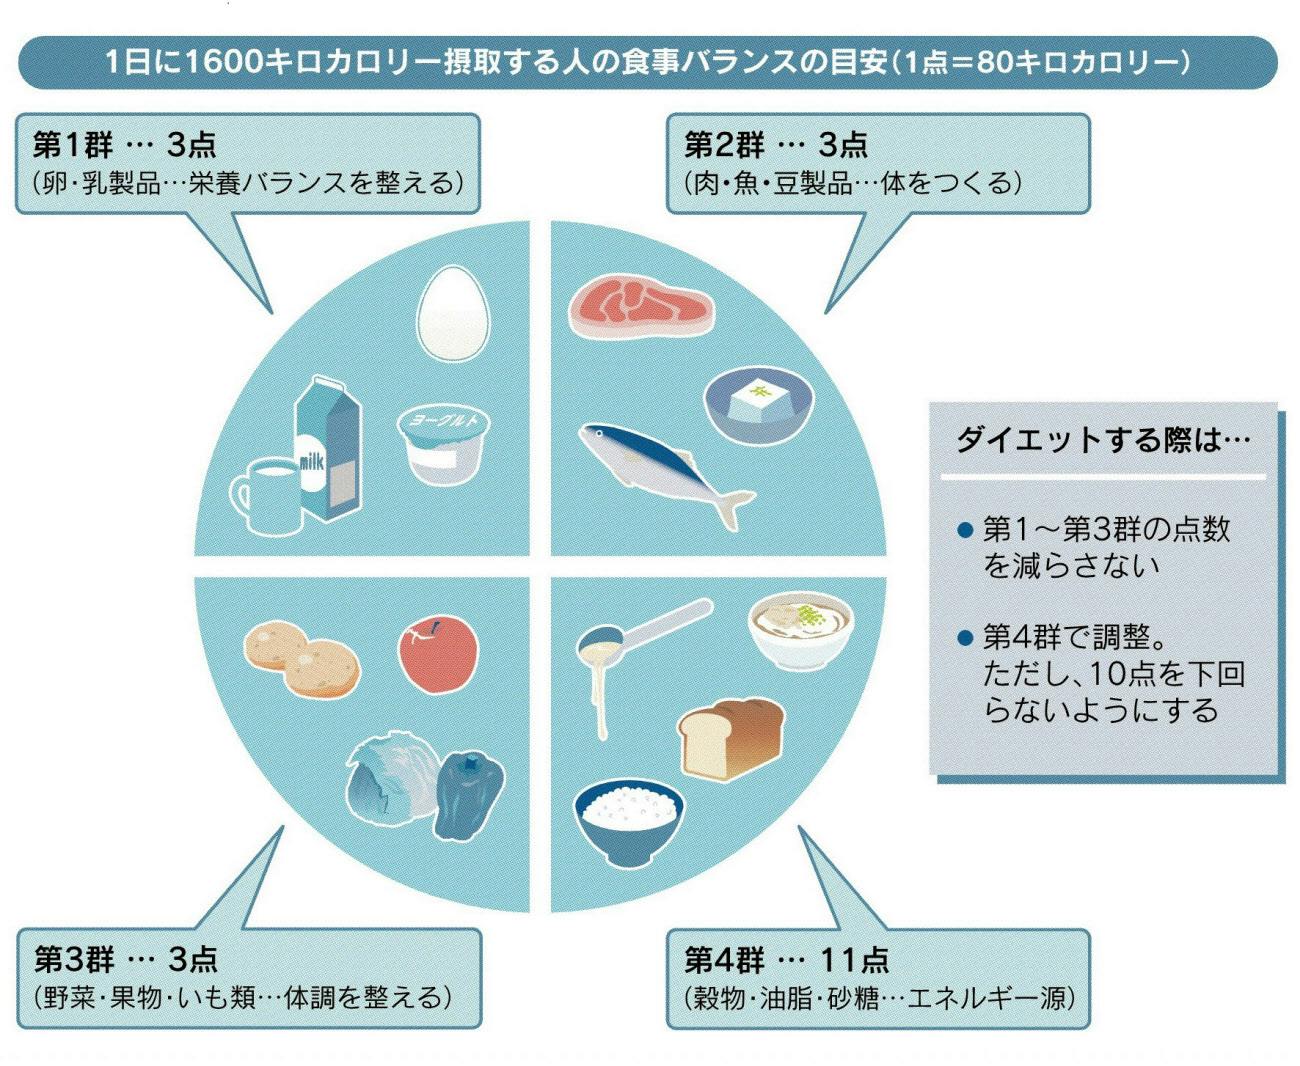 夏に備えダイエット 栄養バランスで筋肉つけバテ防止 ヘルスｕｐ Nikkei Style